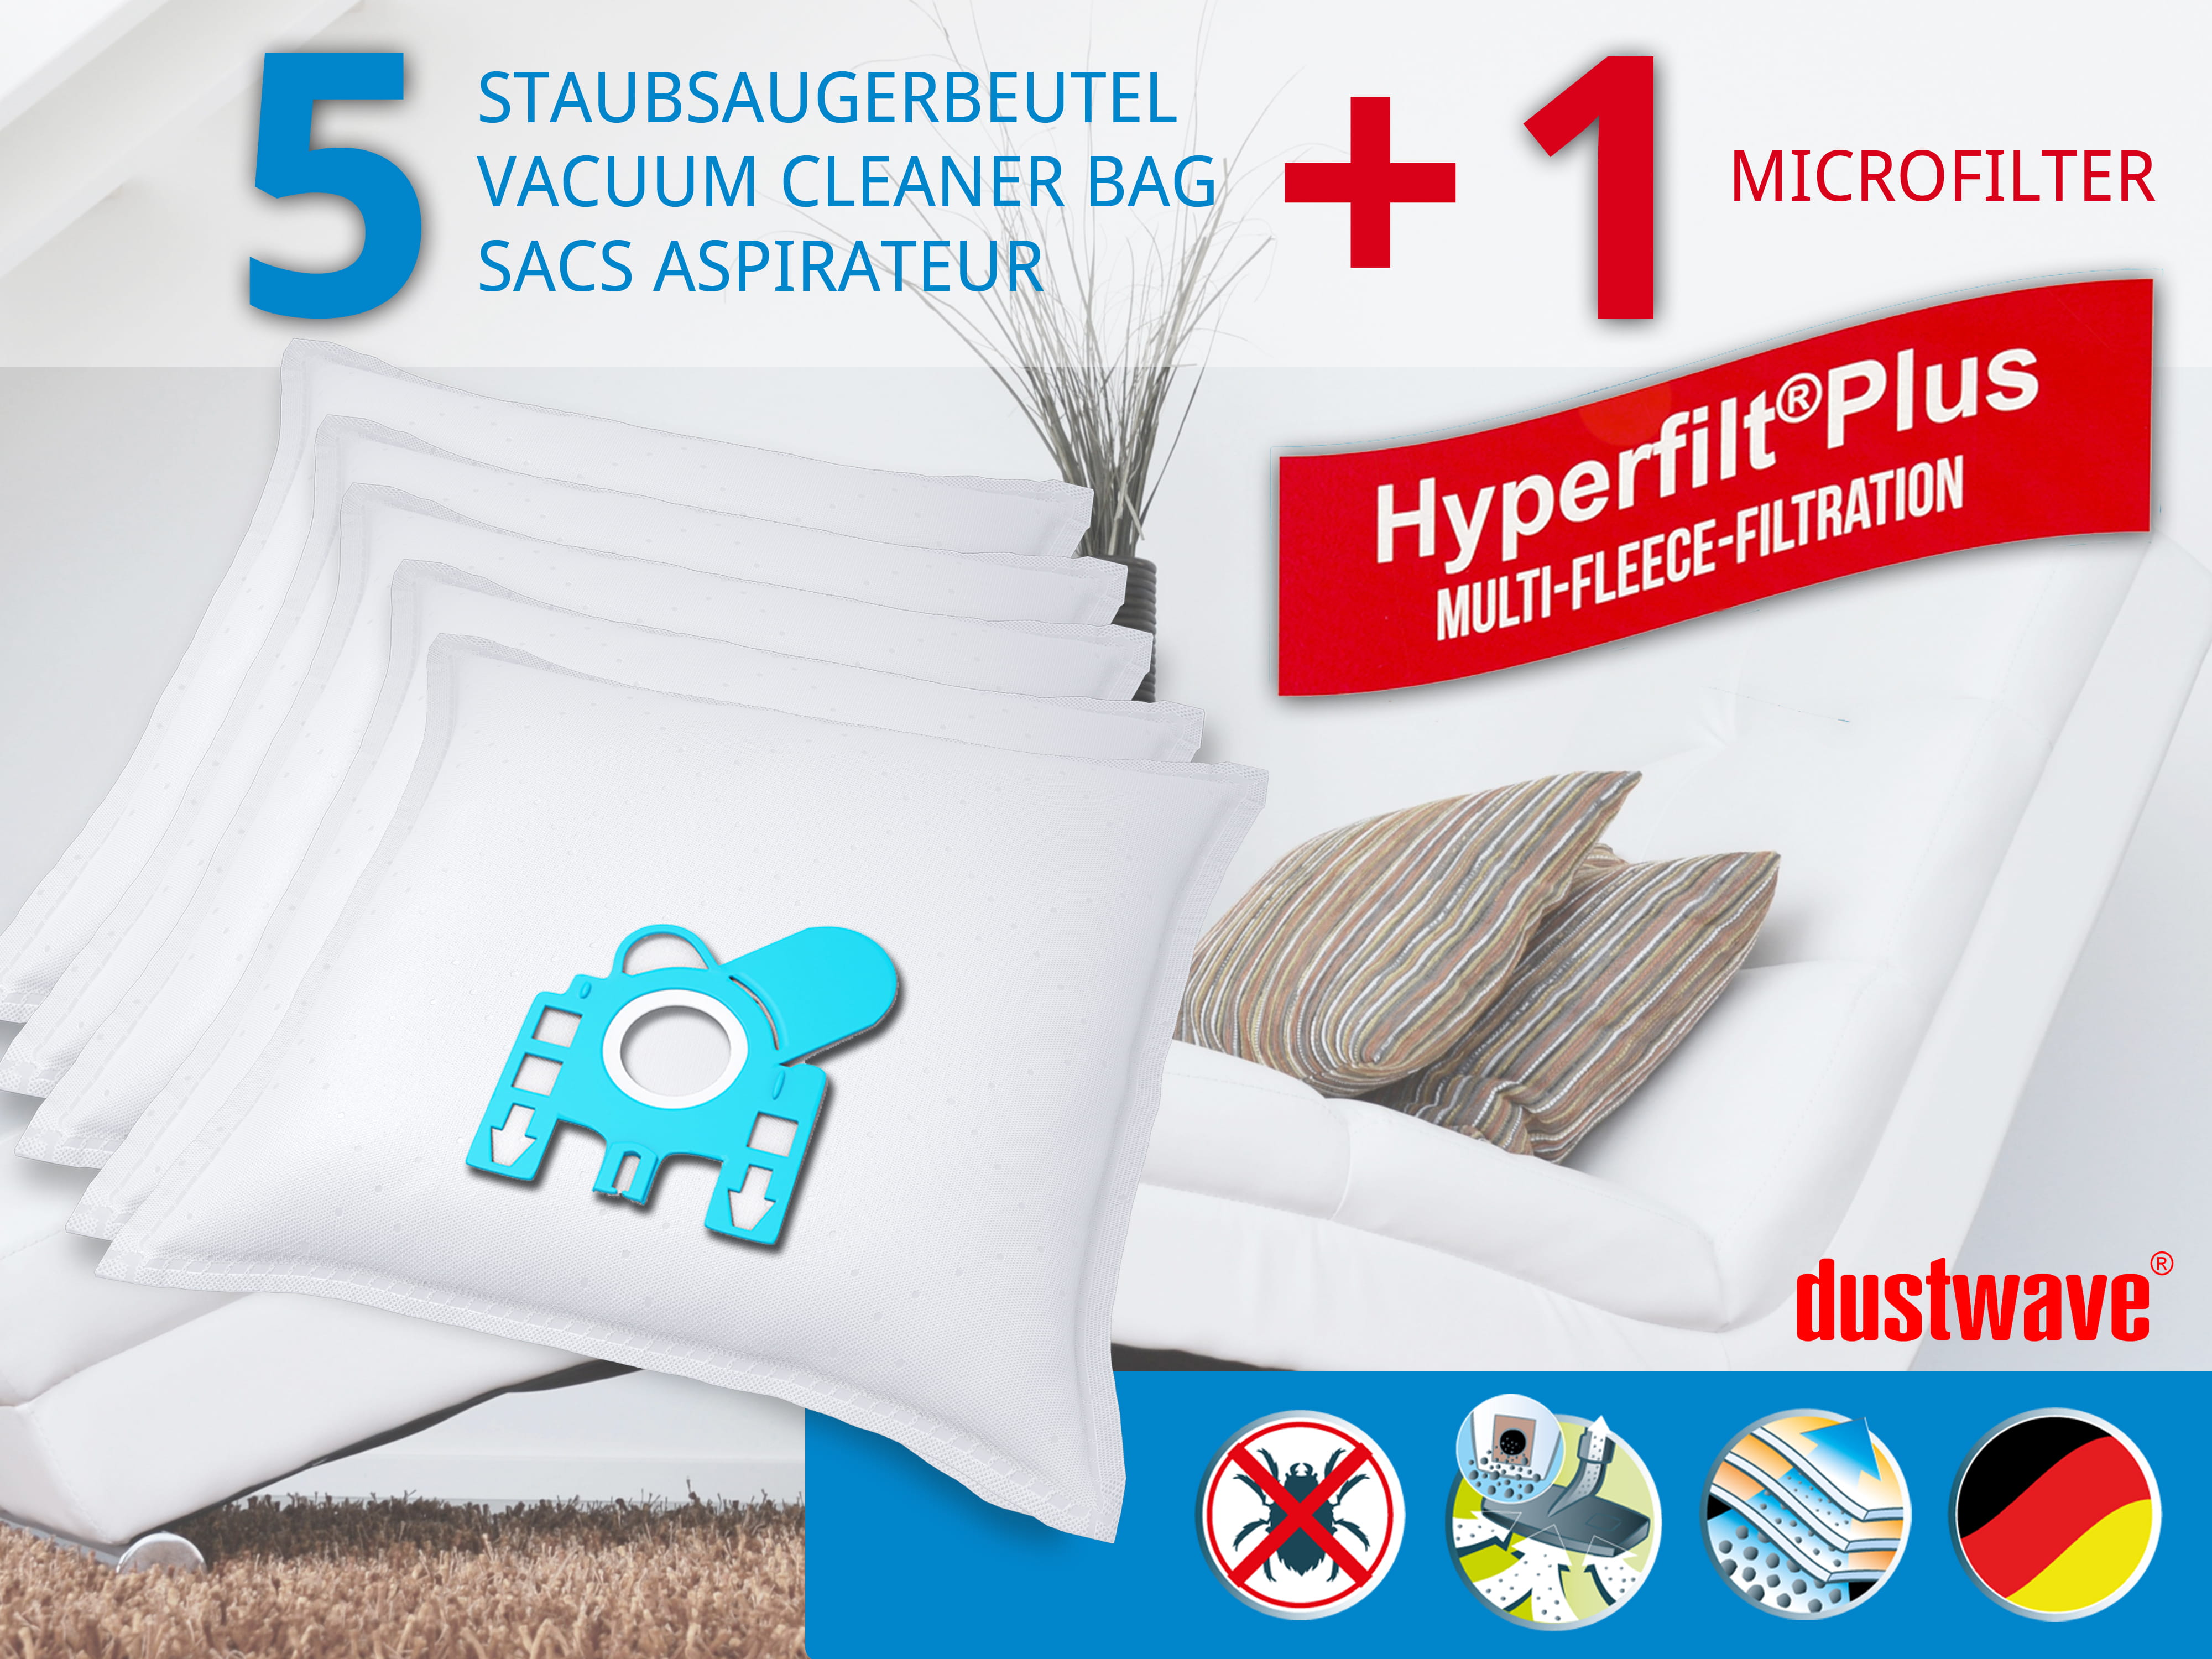 Dustwave® 5 Staubsaugerbeutel für Miele S6790 / S 6790 - hocheffizient, mehrlagiges Mikrovlies mit Hygieneverschluss - Made in Germany